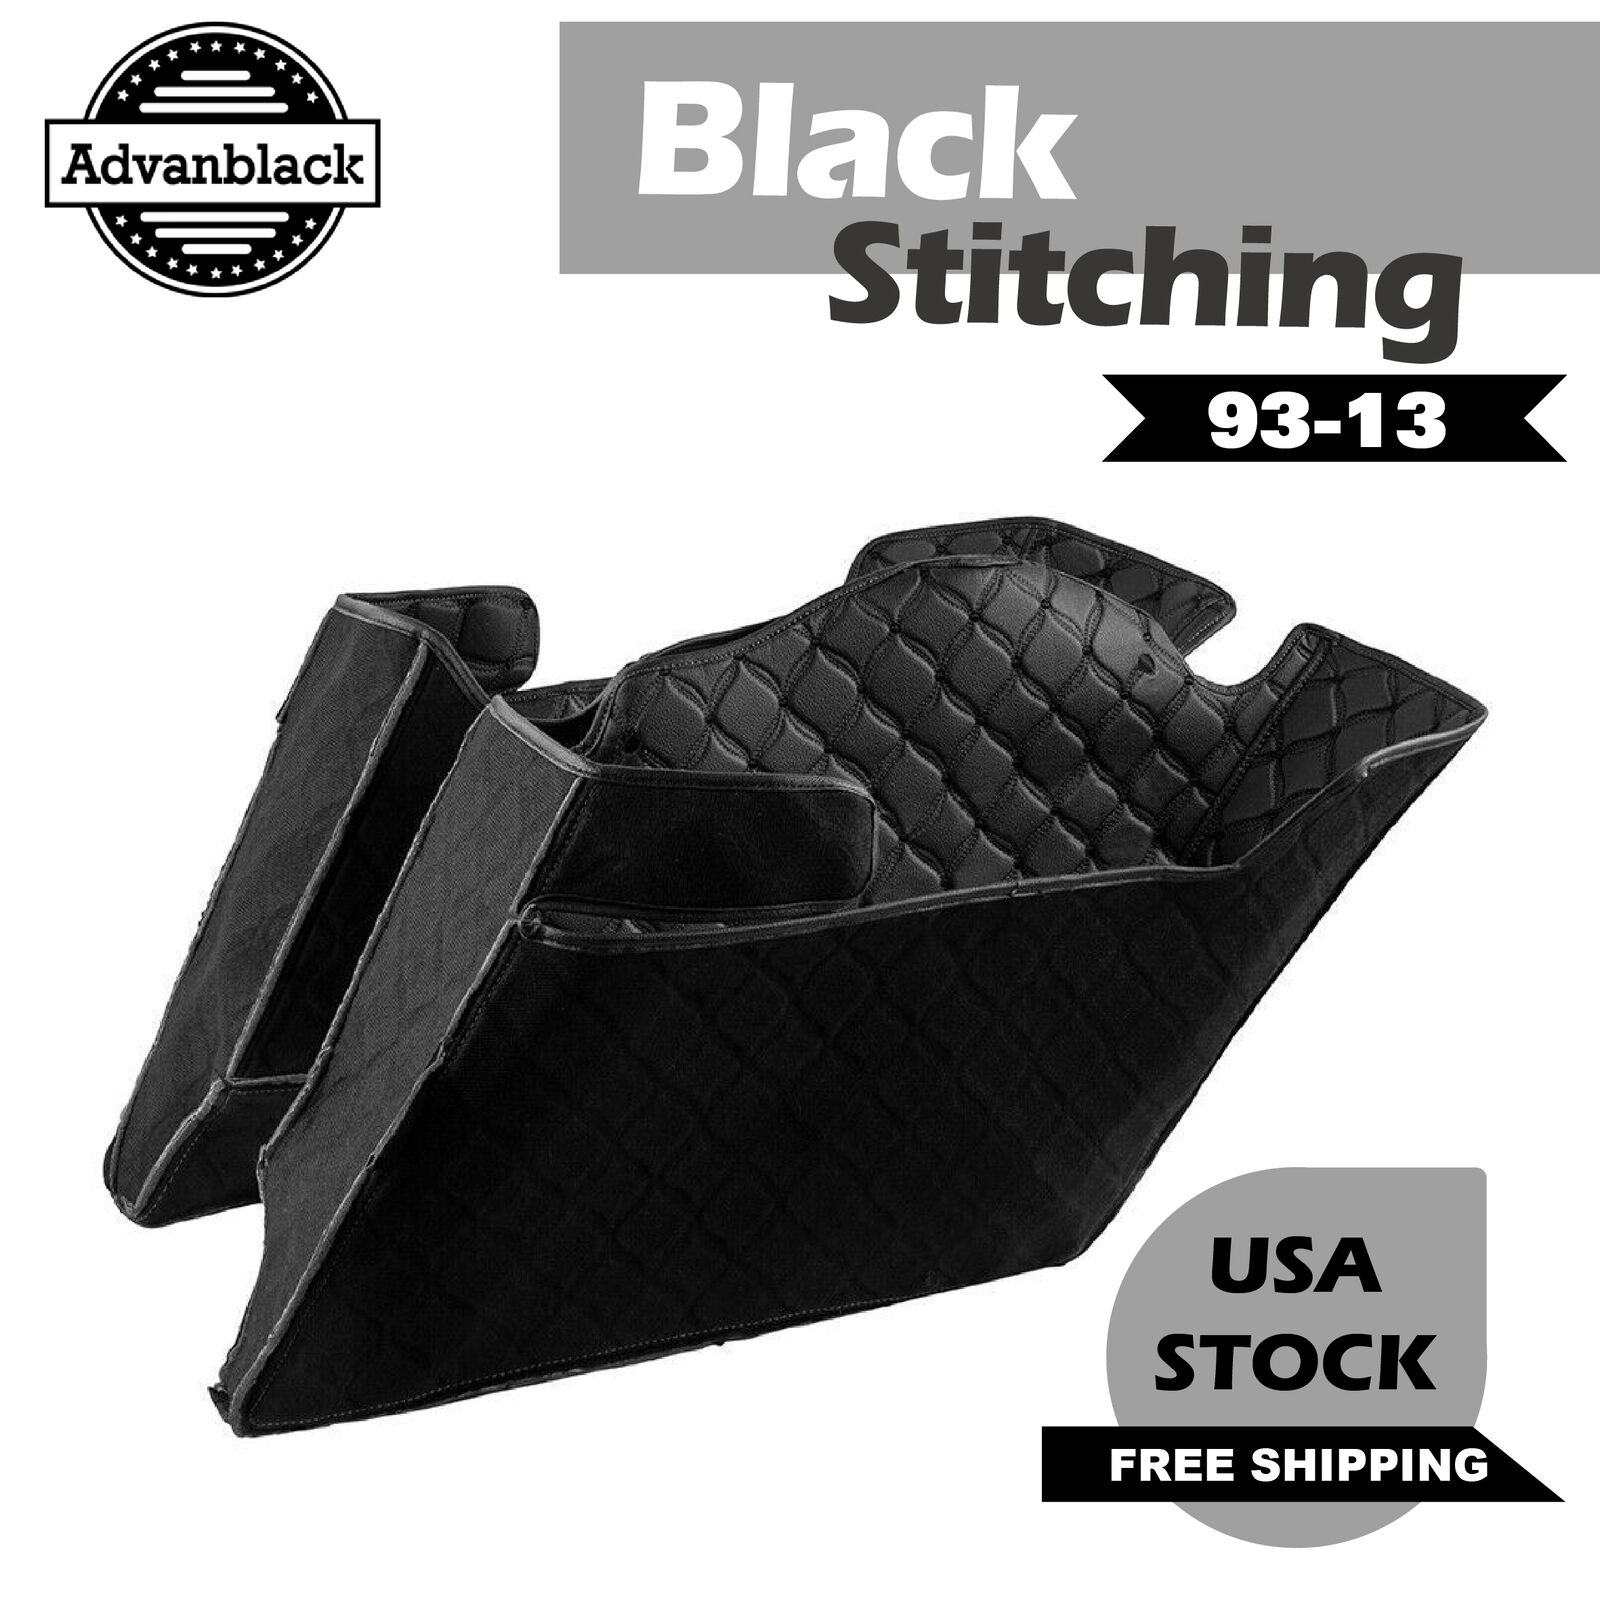 Black Stitching Stretched Saddlebag Liner 93-13 Advanblack Extended Saddlebag